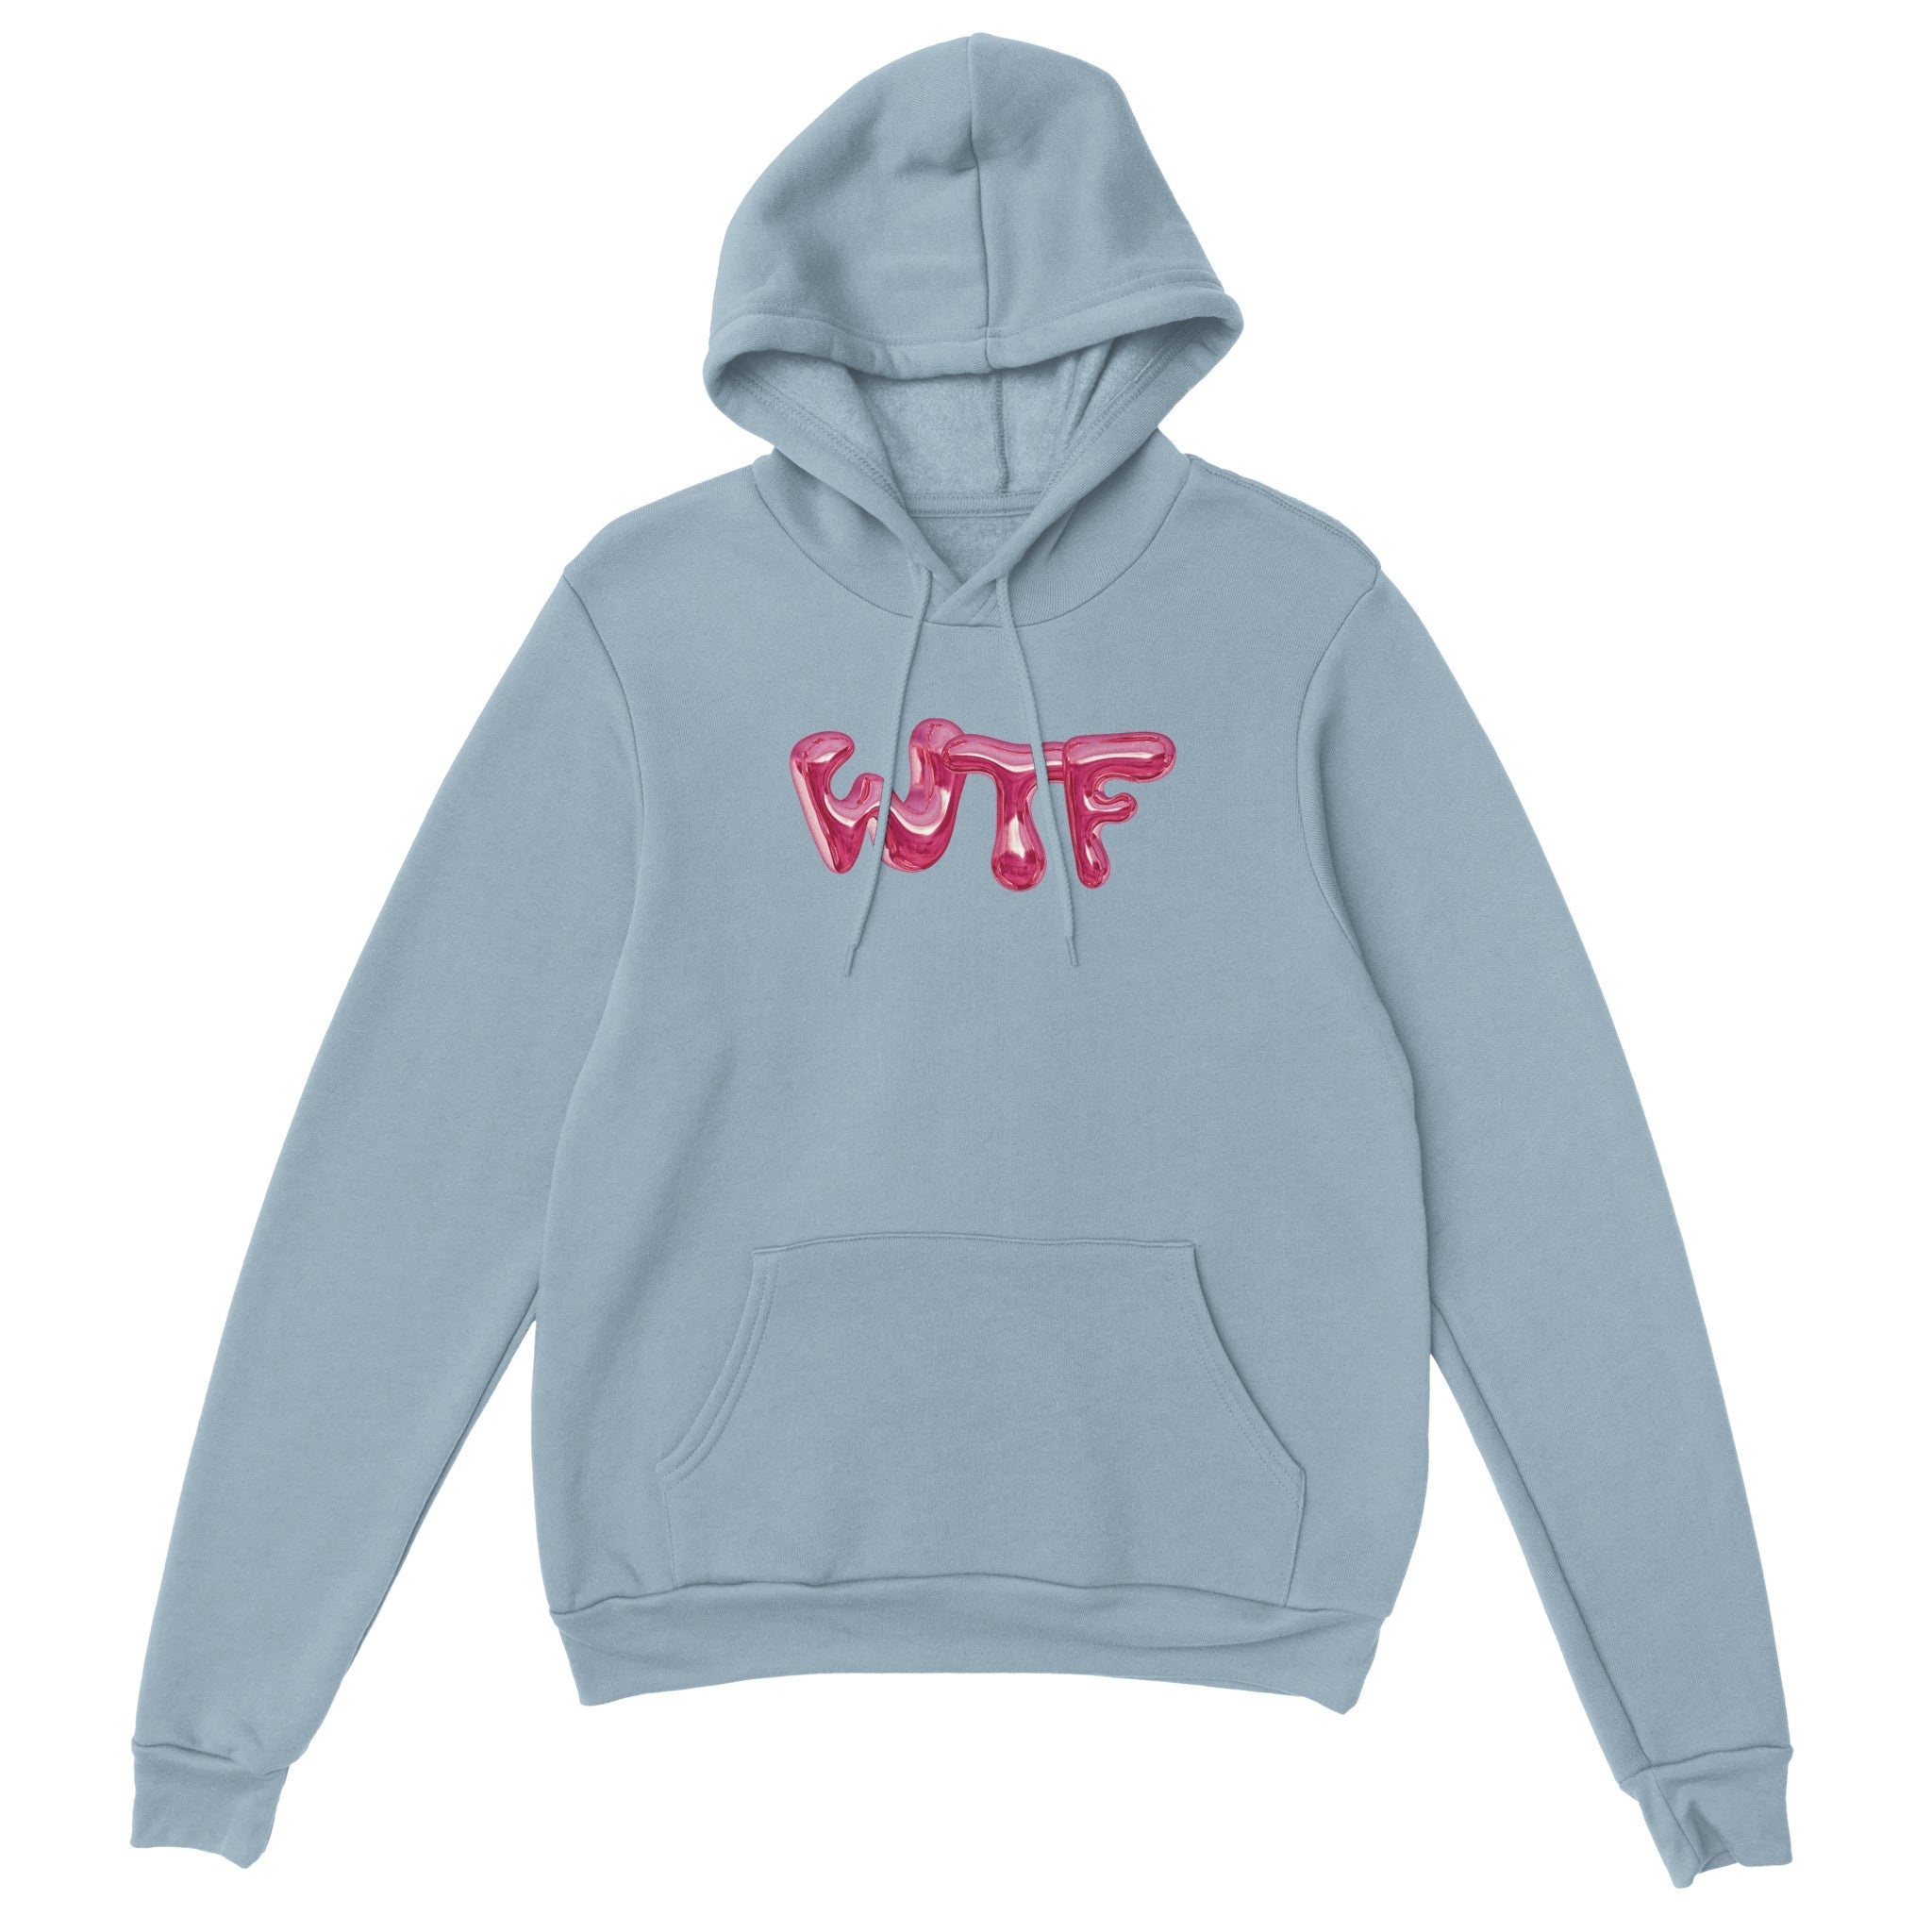 'WTF' hoodie - In Print We Trust